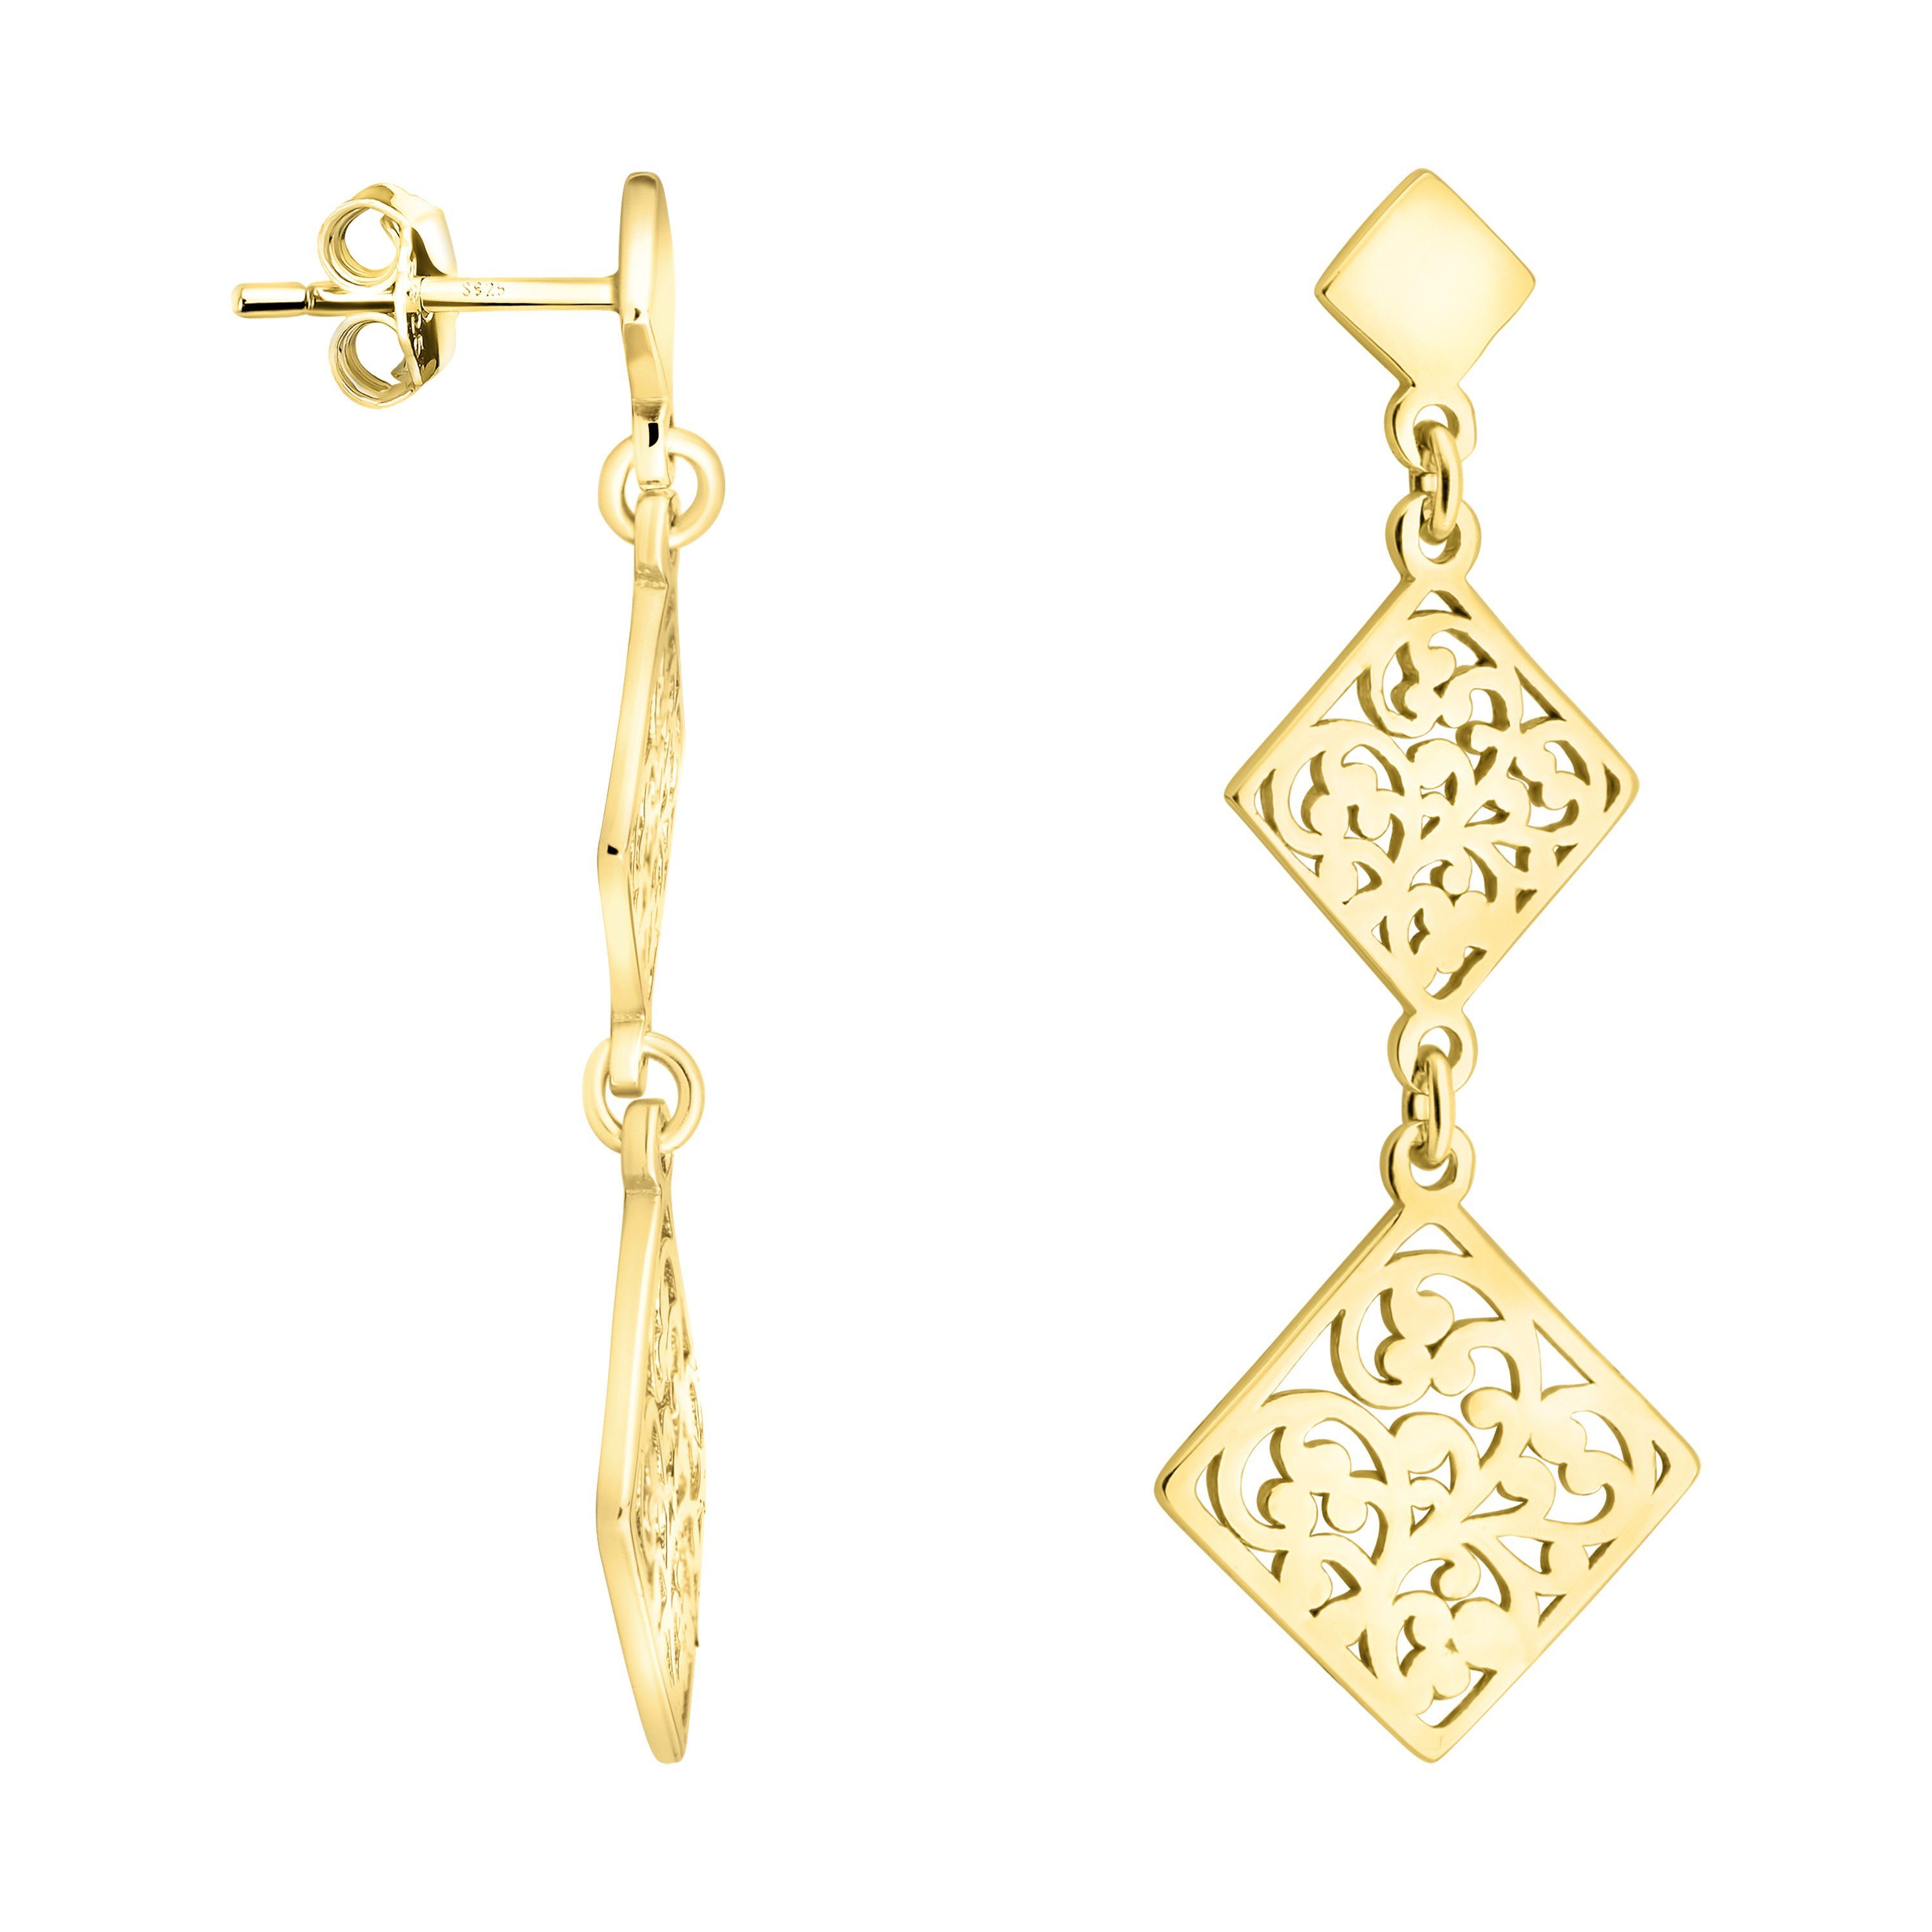 Sofia Milani Paar Ohrhänger Ornament 925 gold Quadratisch, Schmuck Damen Silber